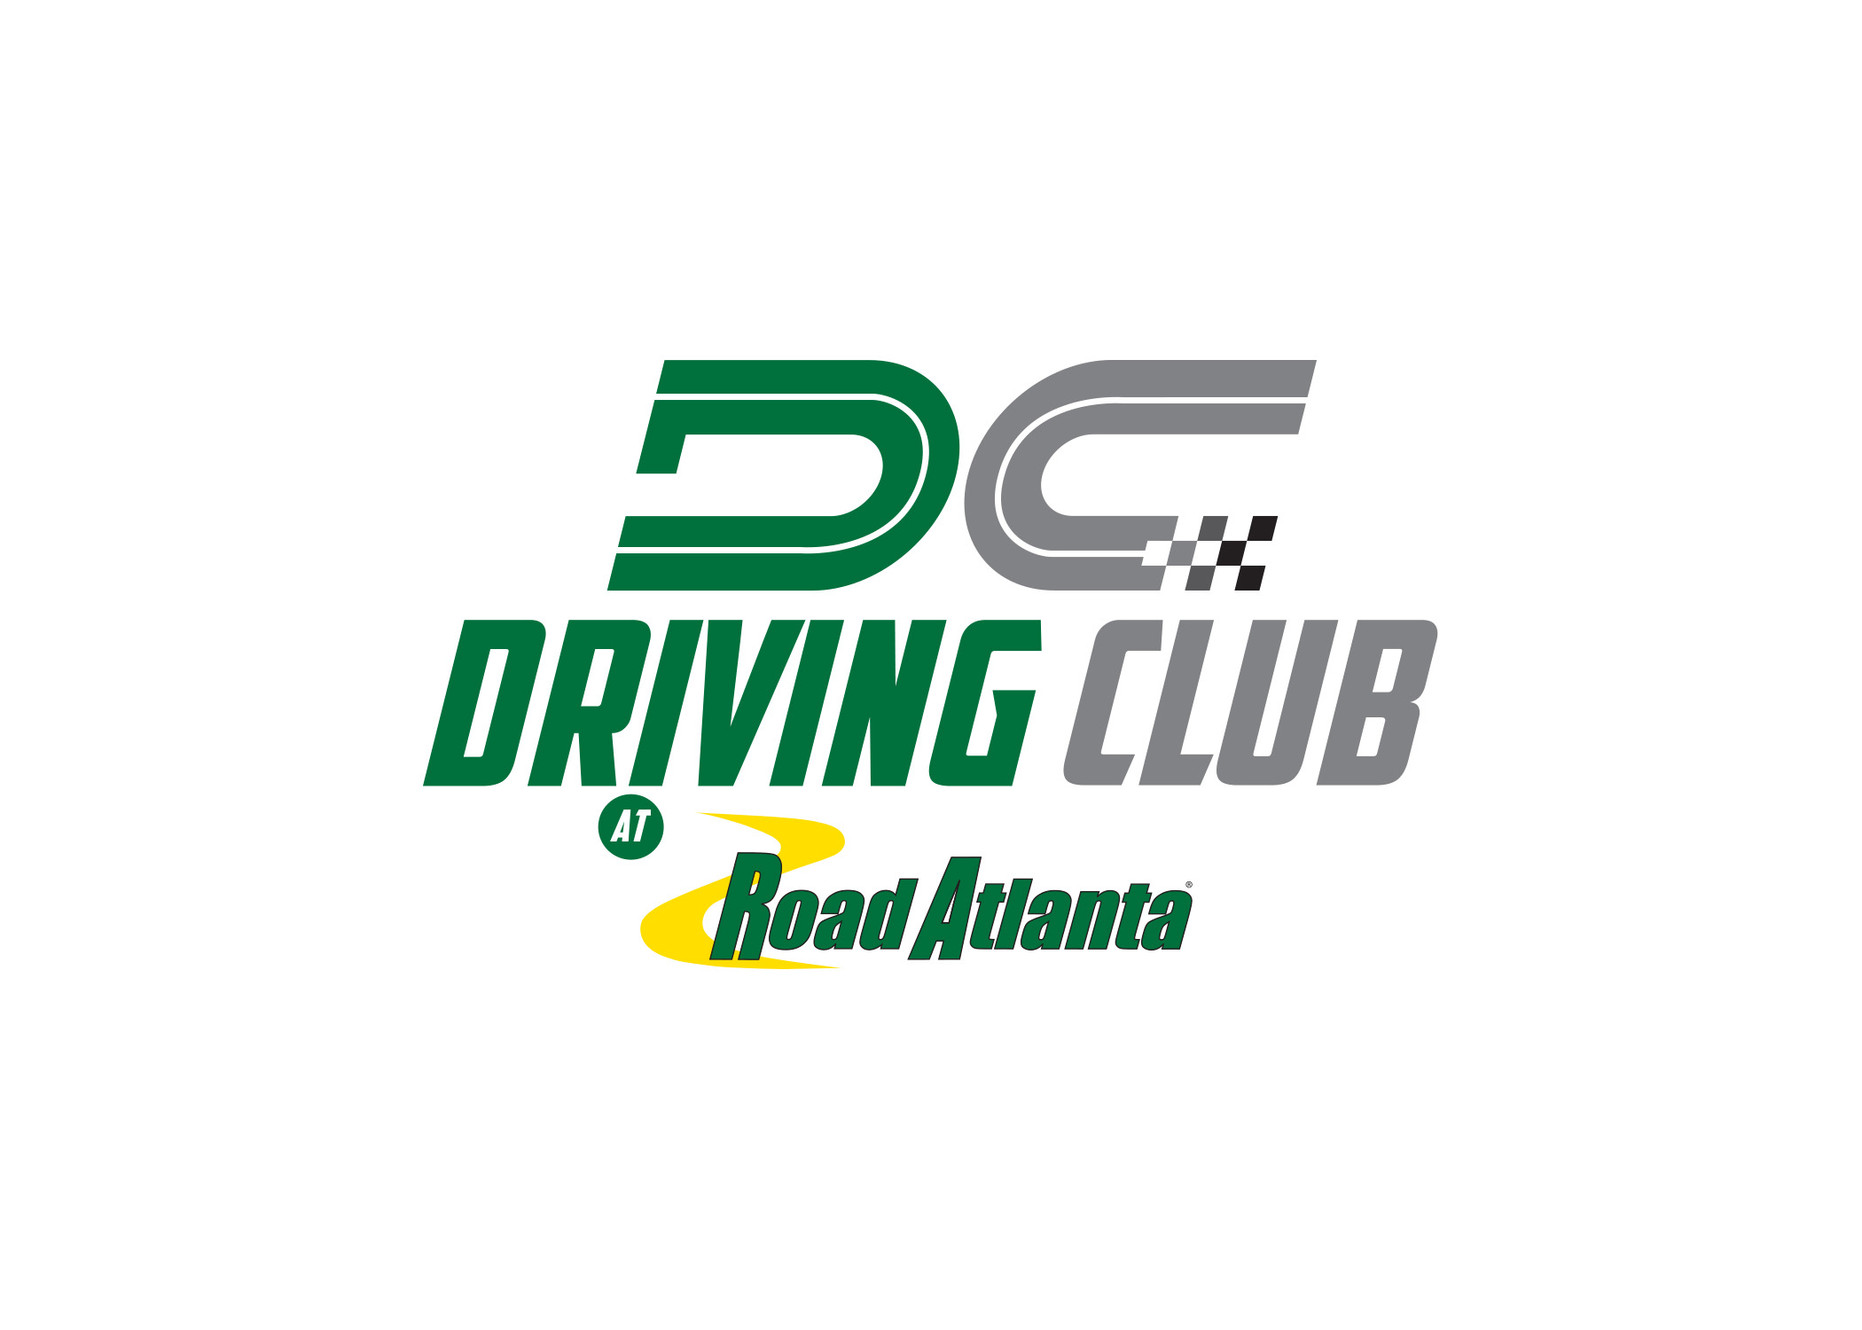 www.drivingclubra.com